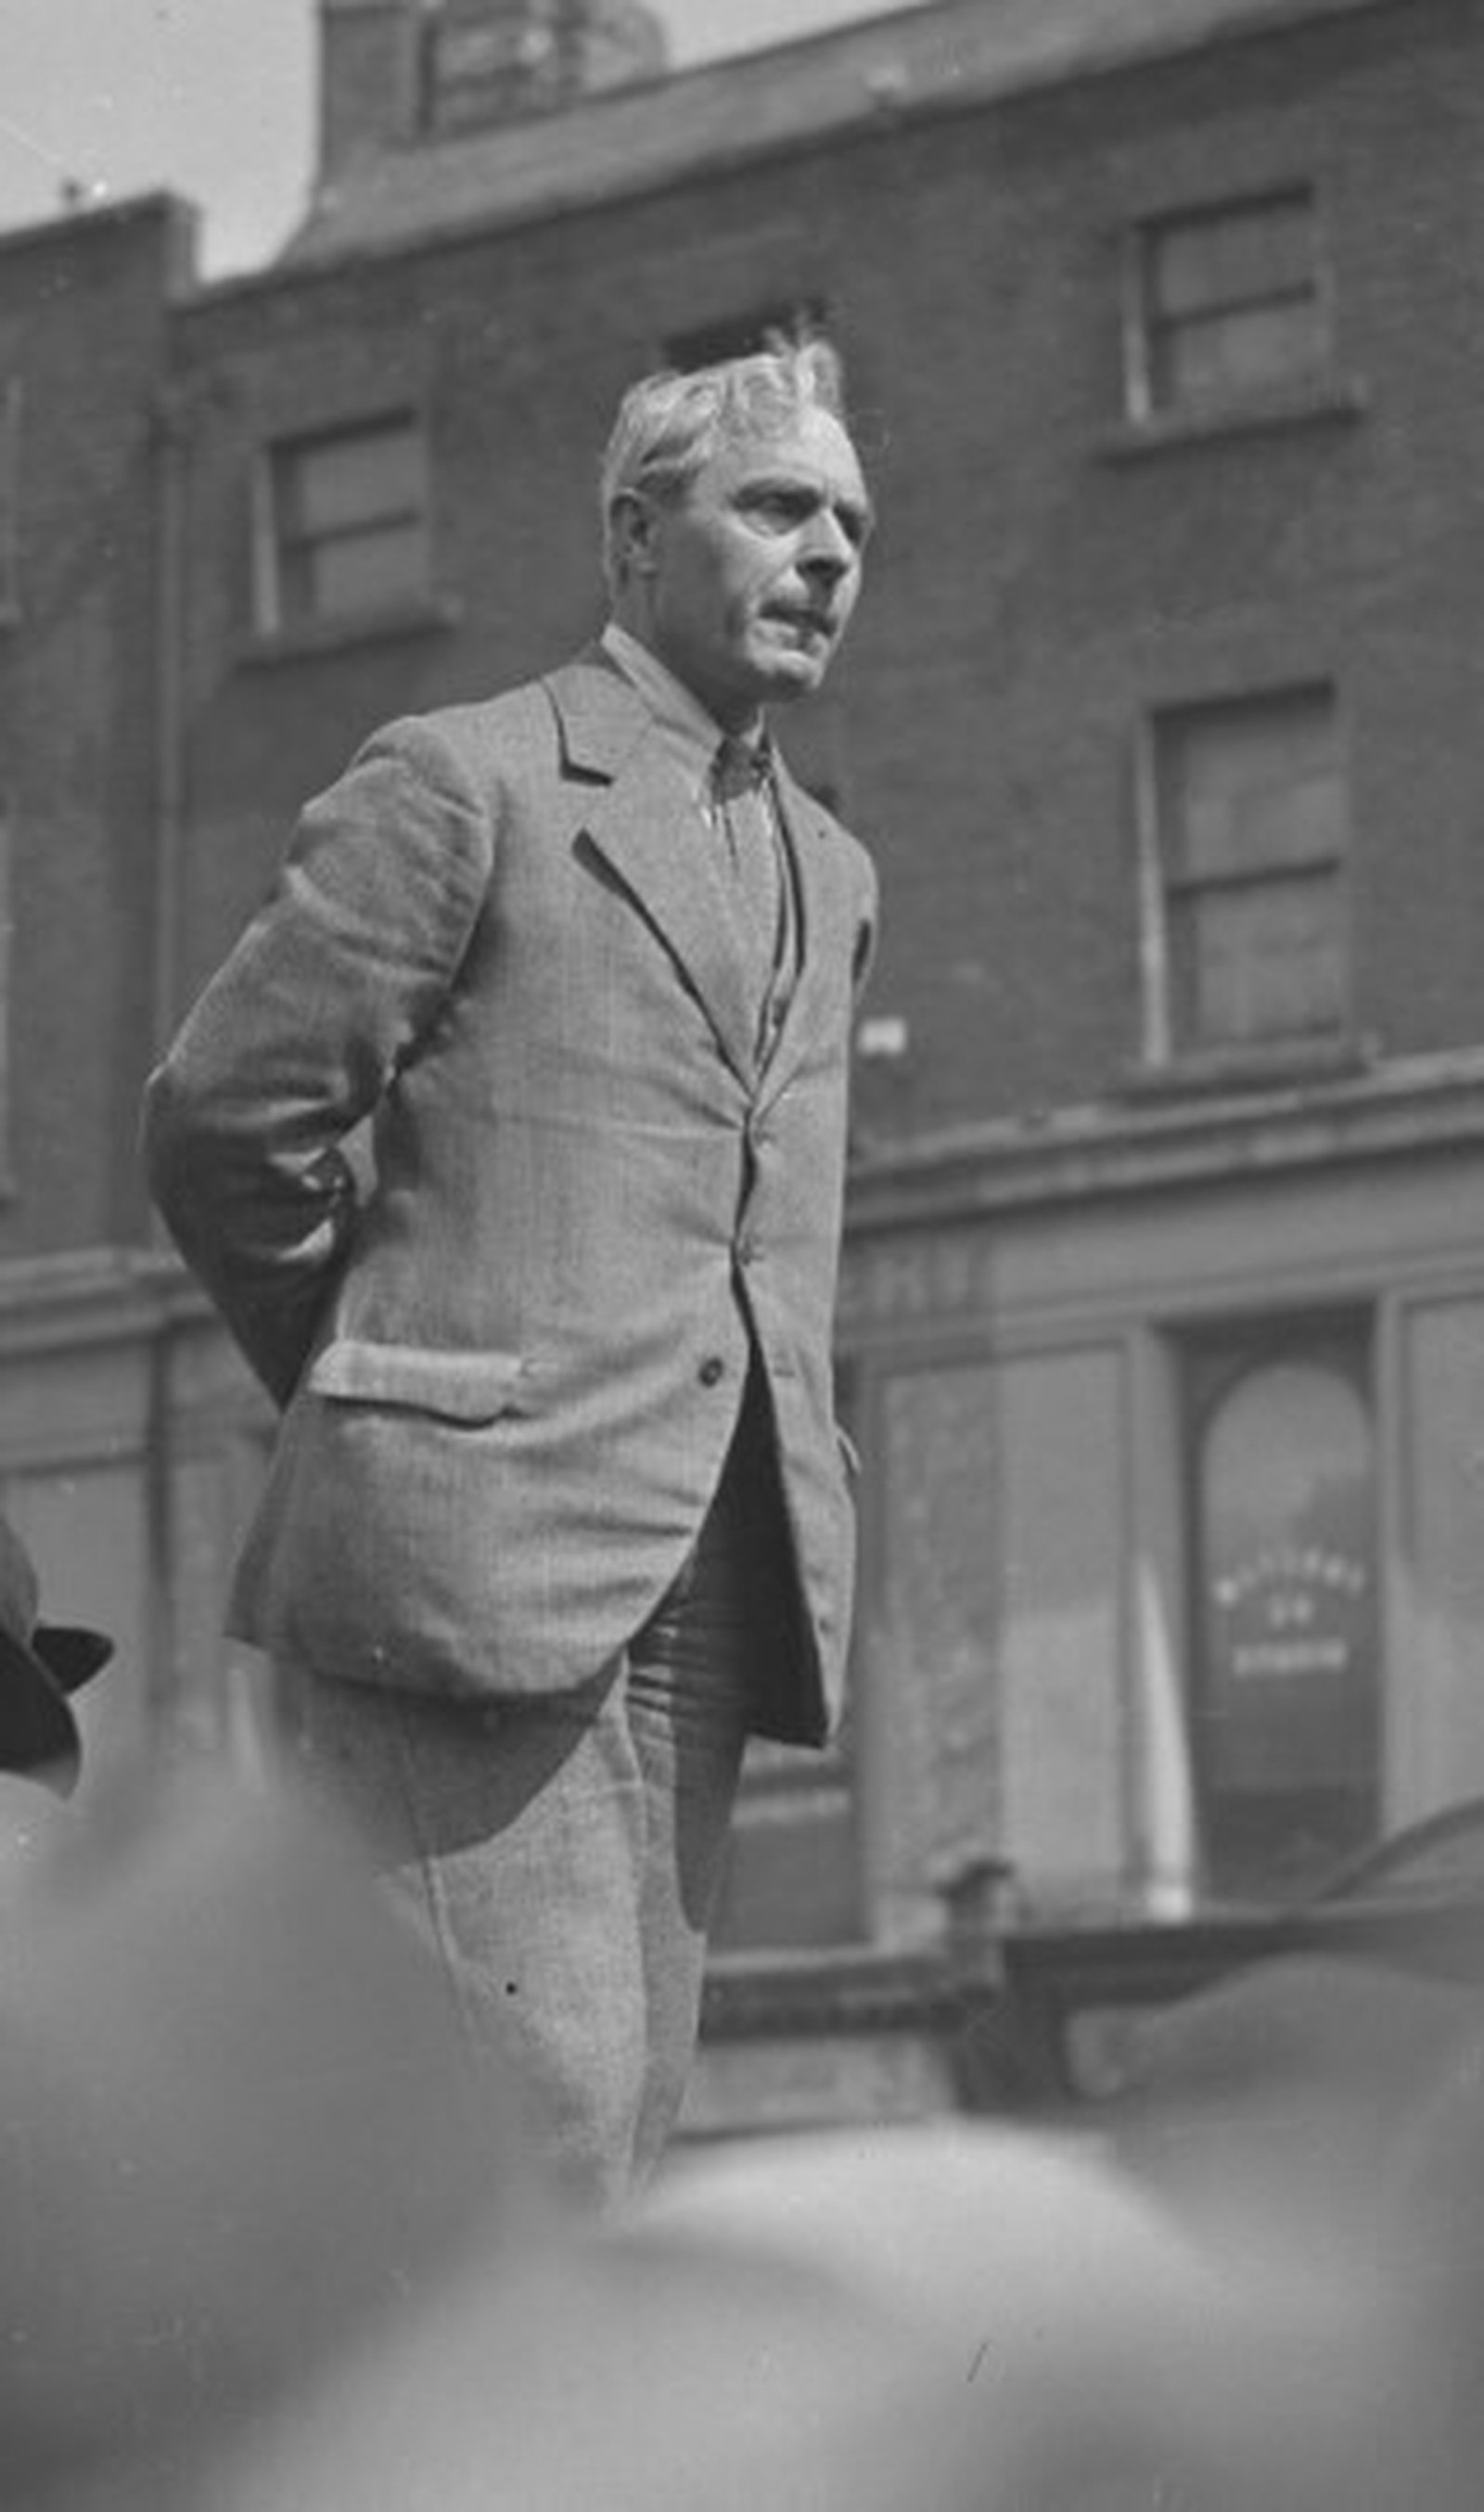 Image - Labour Party leader Thomas Johnson. Credit: © RTÉ Photographic Archive/Cashman Collection.